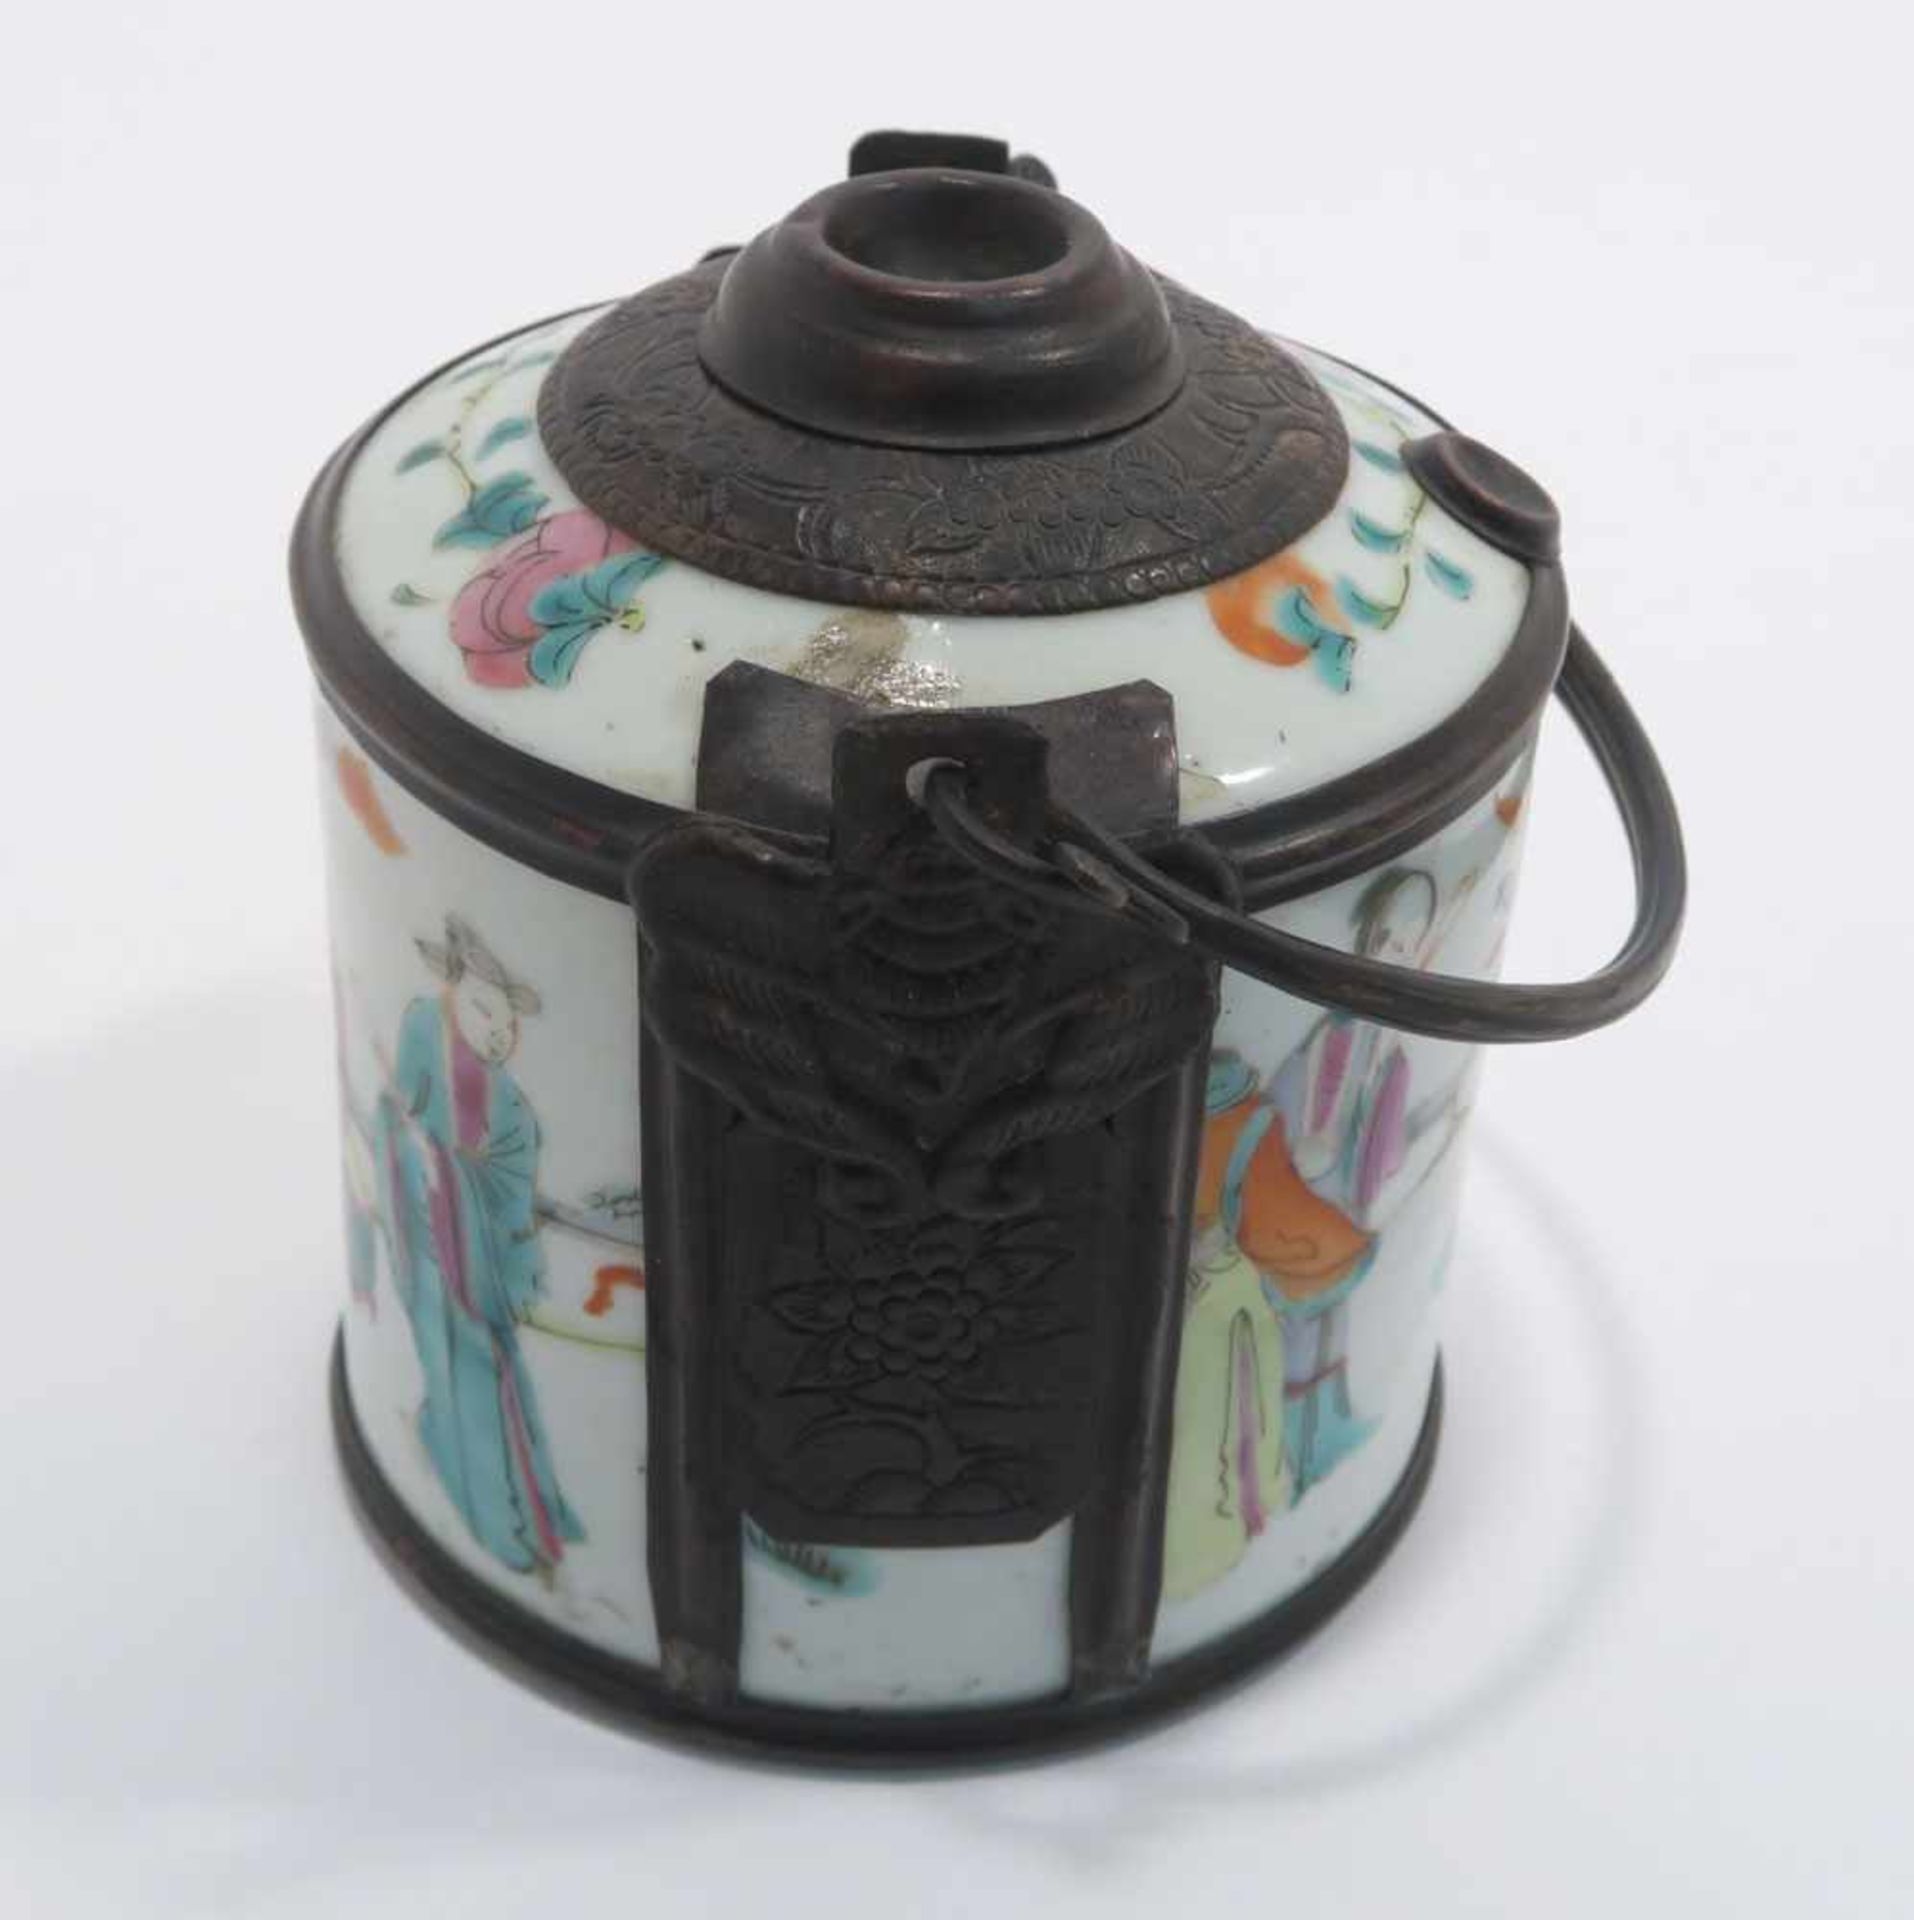 Opiumpfeife / Vase / DeckelgefäßChina. Porzellan, tlw. mit Kupfermontierung. Verschiedene bunte bzw. - Bild 5 aus 21